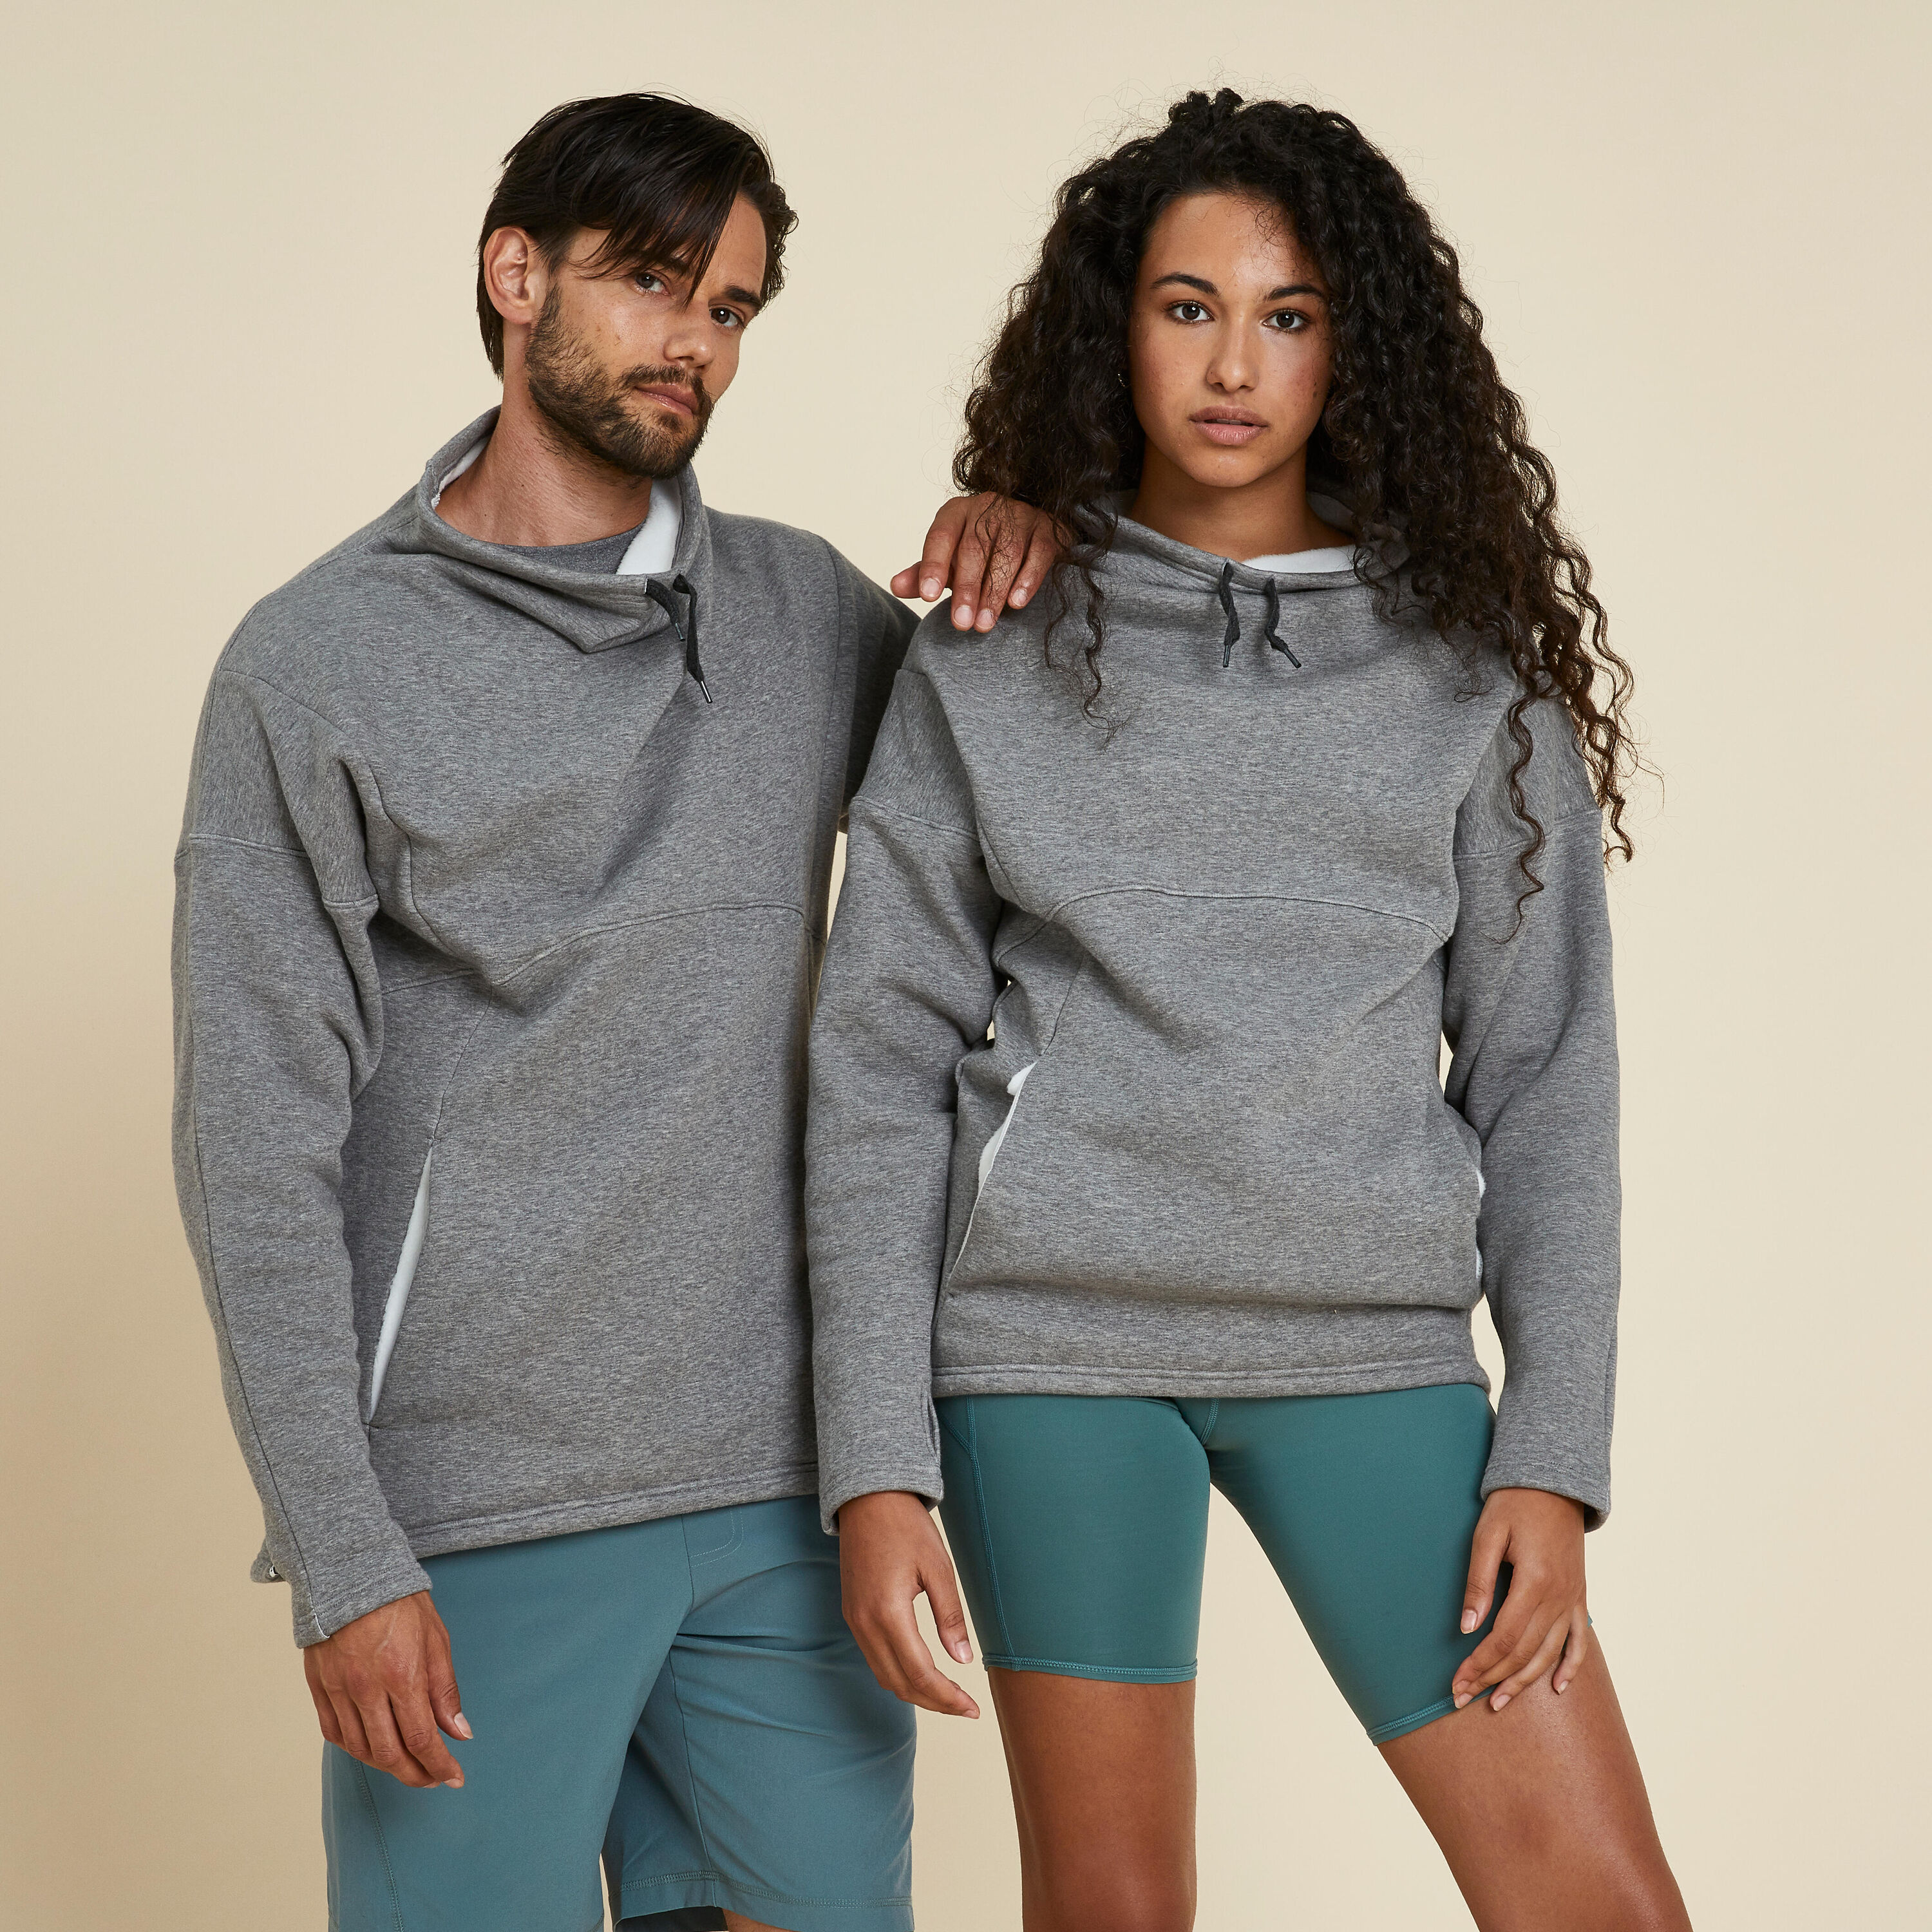 KIMJALY Unisex Yoga Warm Sweatshirt - Grey